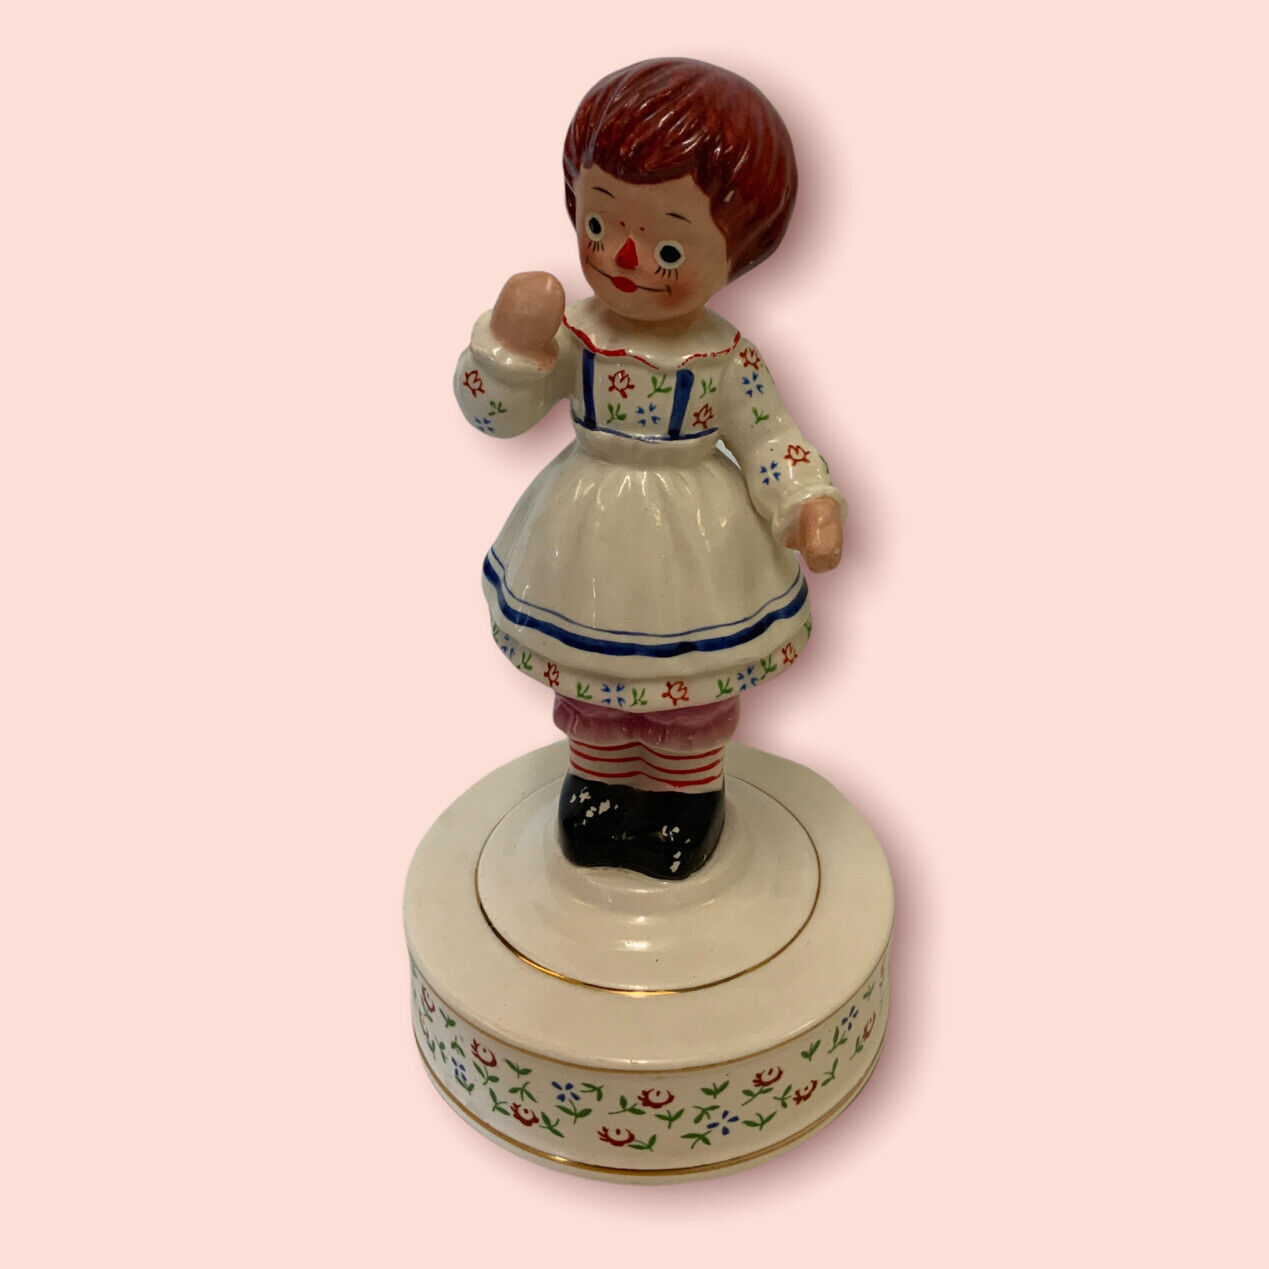 Schmid Vintage 1971 “Raggedy Ann” Porcelain Musical Figurine-The Bobbs Merrill 